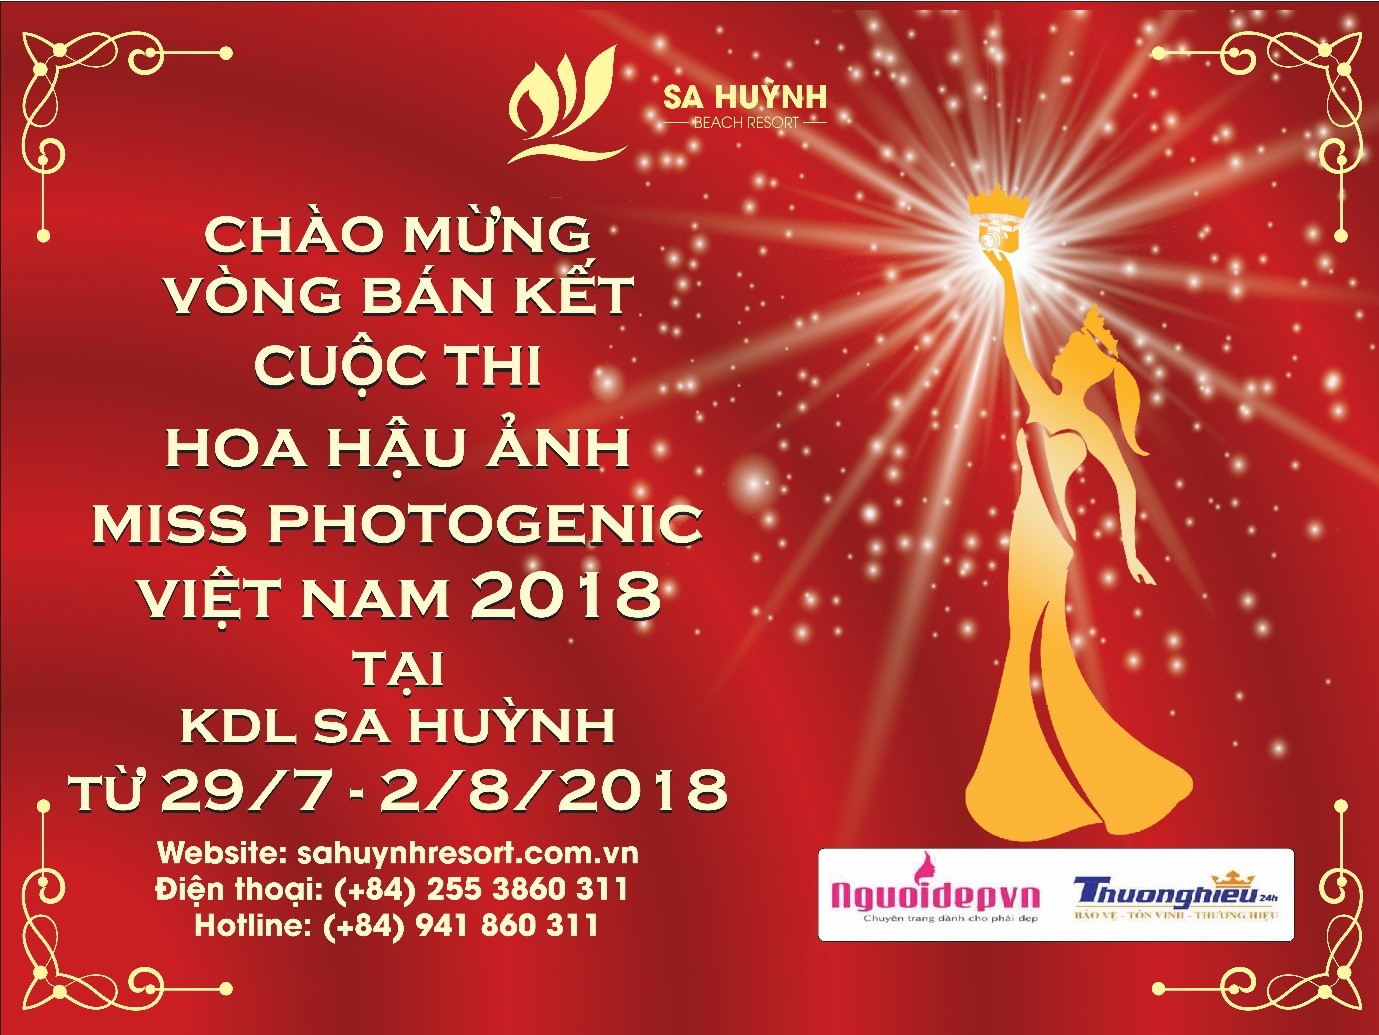 Vòng bán kết cuộc thi hoa hậu ảnh Miss Photogenic Việt Nam 2018 tại Khu du lịch Sa Huỳnh